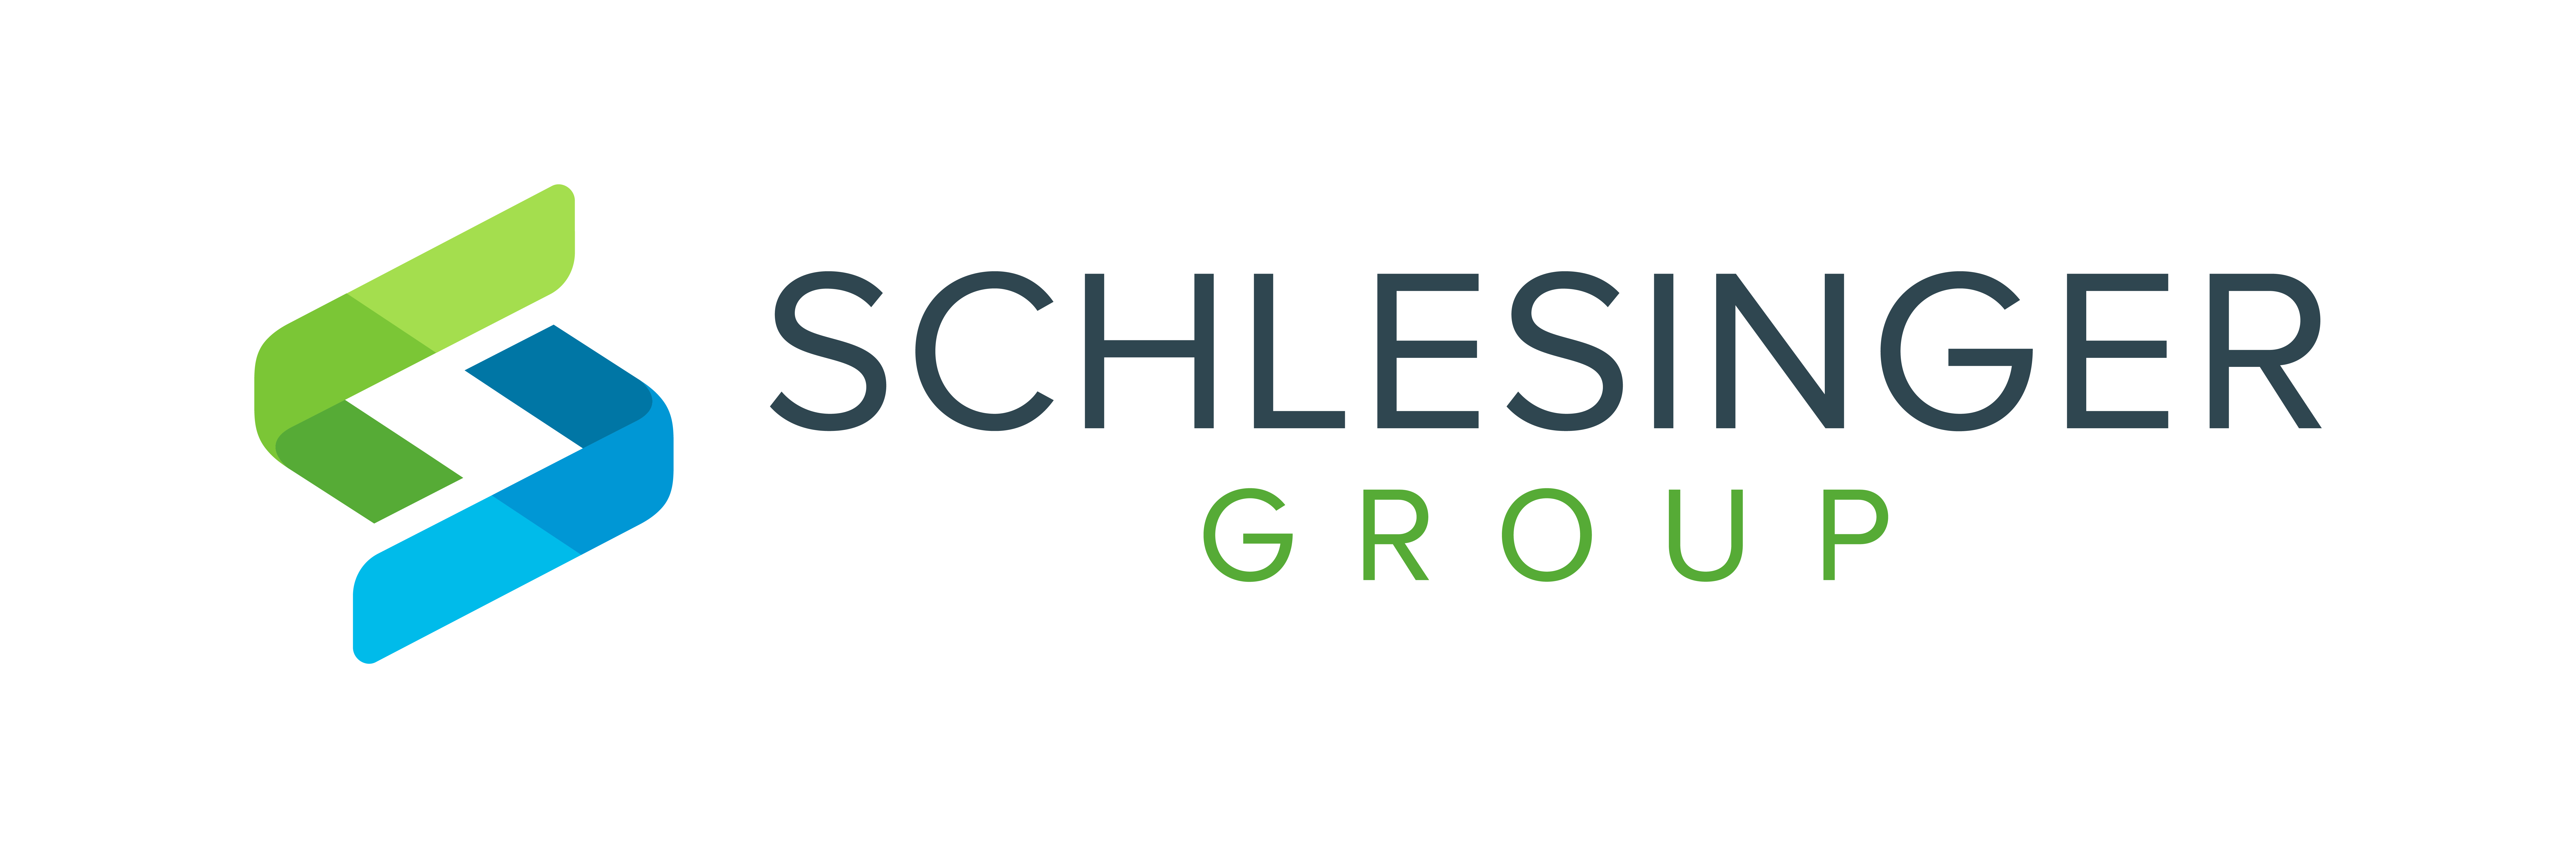 Schlesinger-Group-Logo